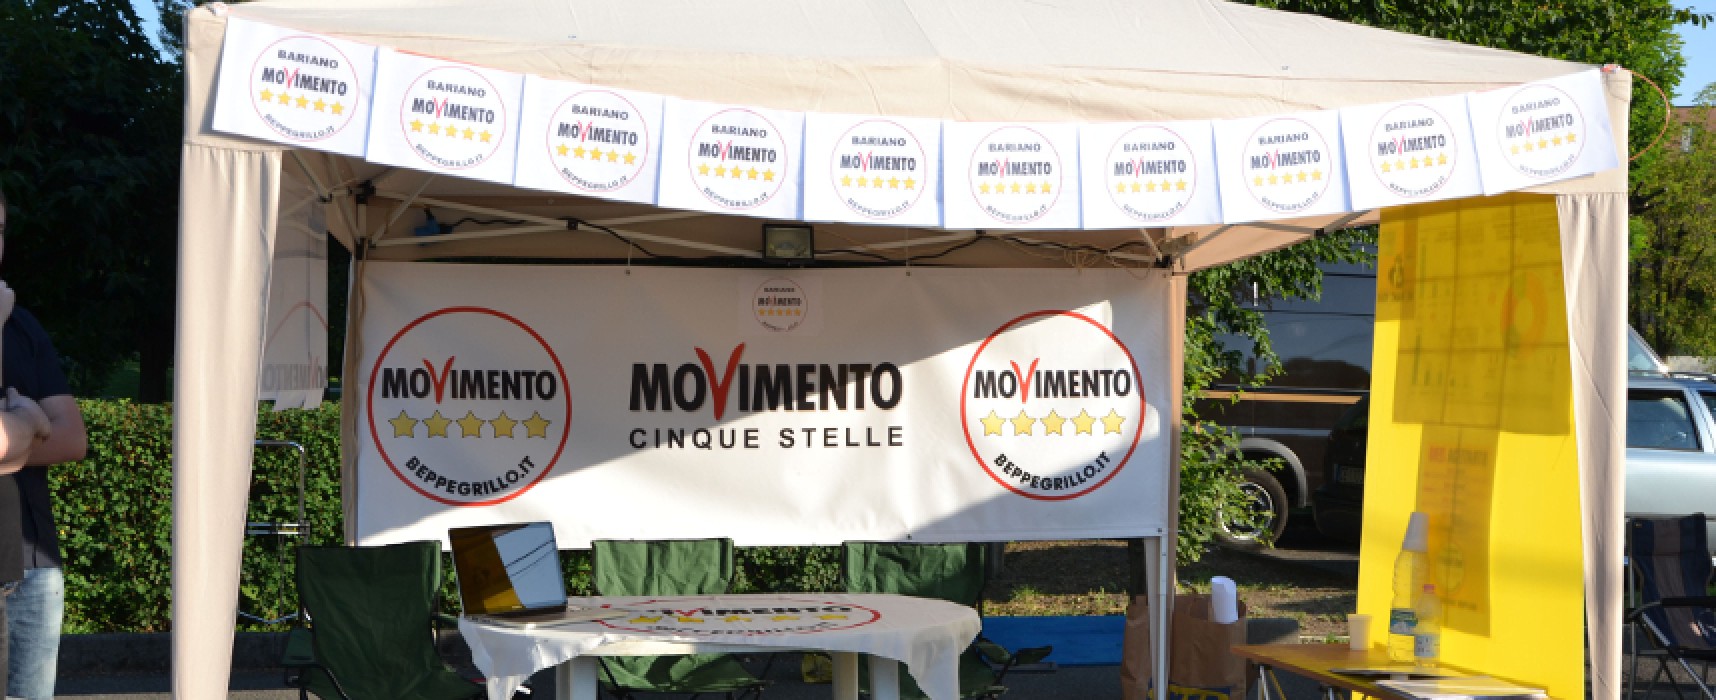 Gazebo “5 Stelle” per raccolta firme contro “Sblocca Italia” del Governo Renzi